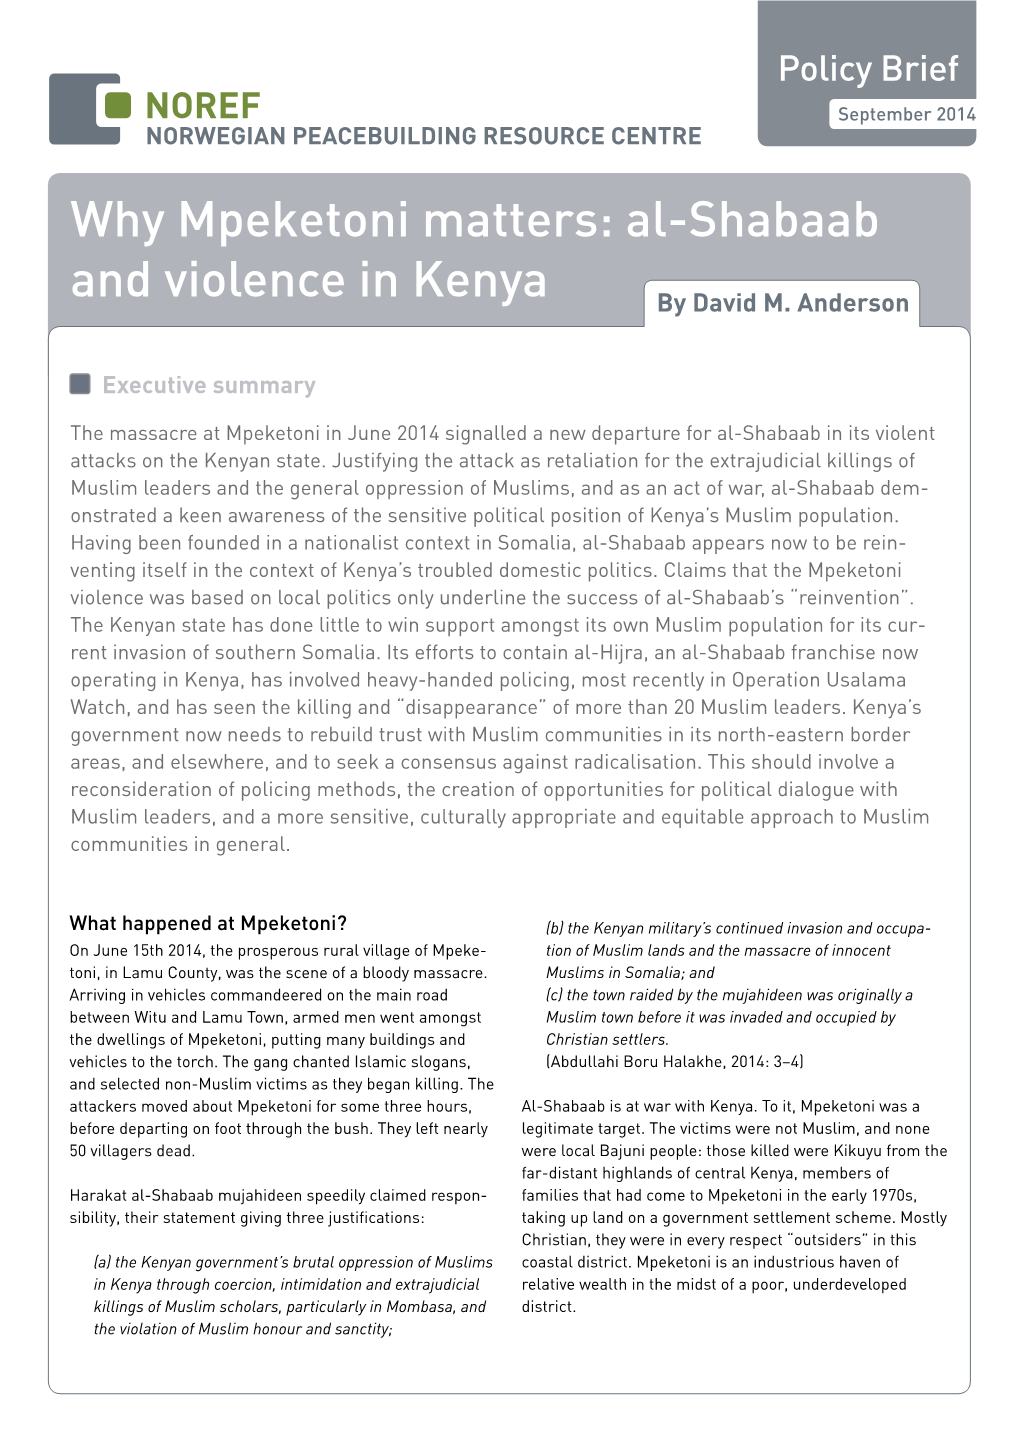 Why Mpeketoni Matters: Al-Shabaab and Violence in Kenya by David M